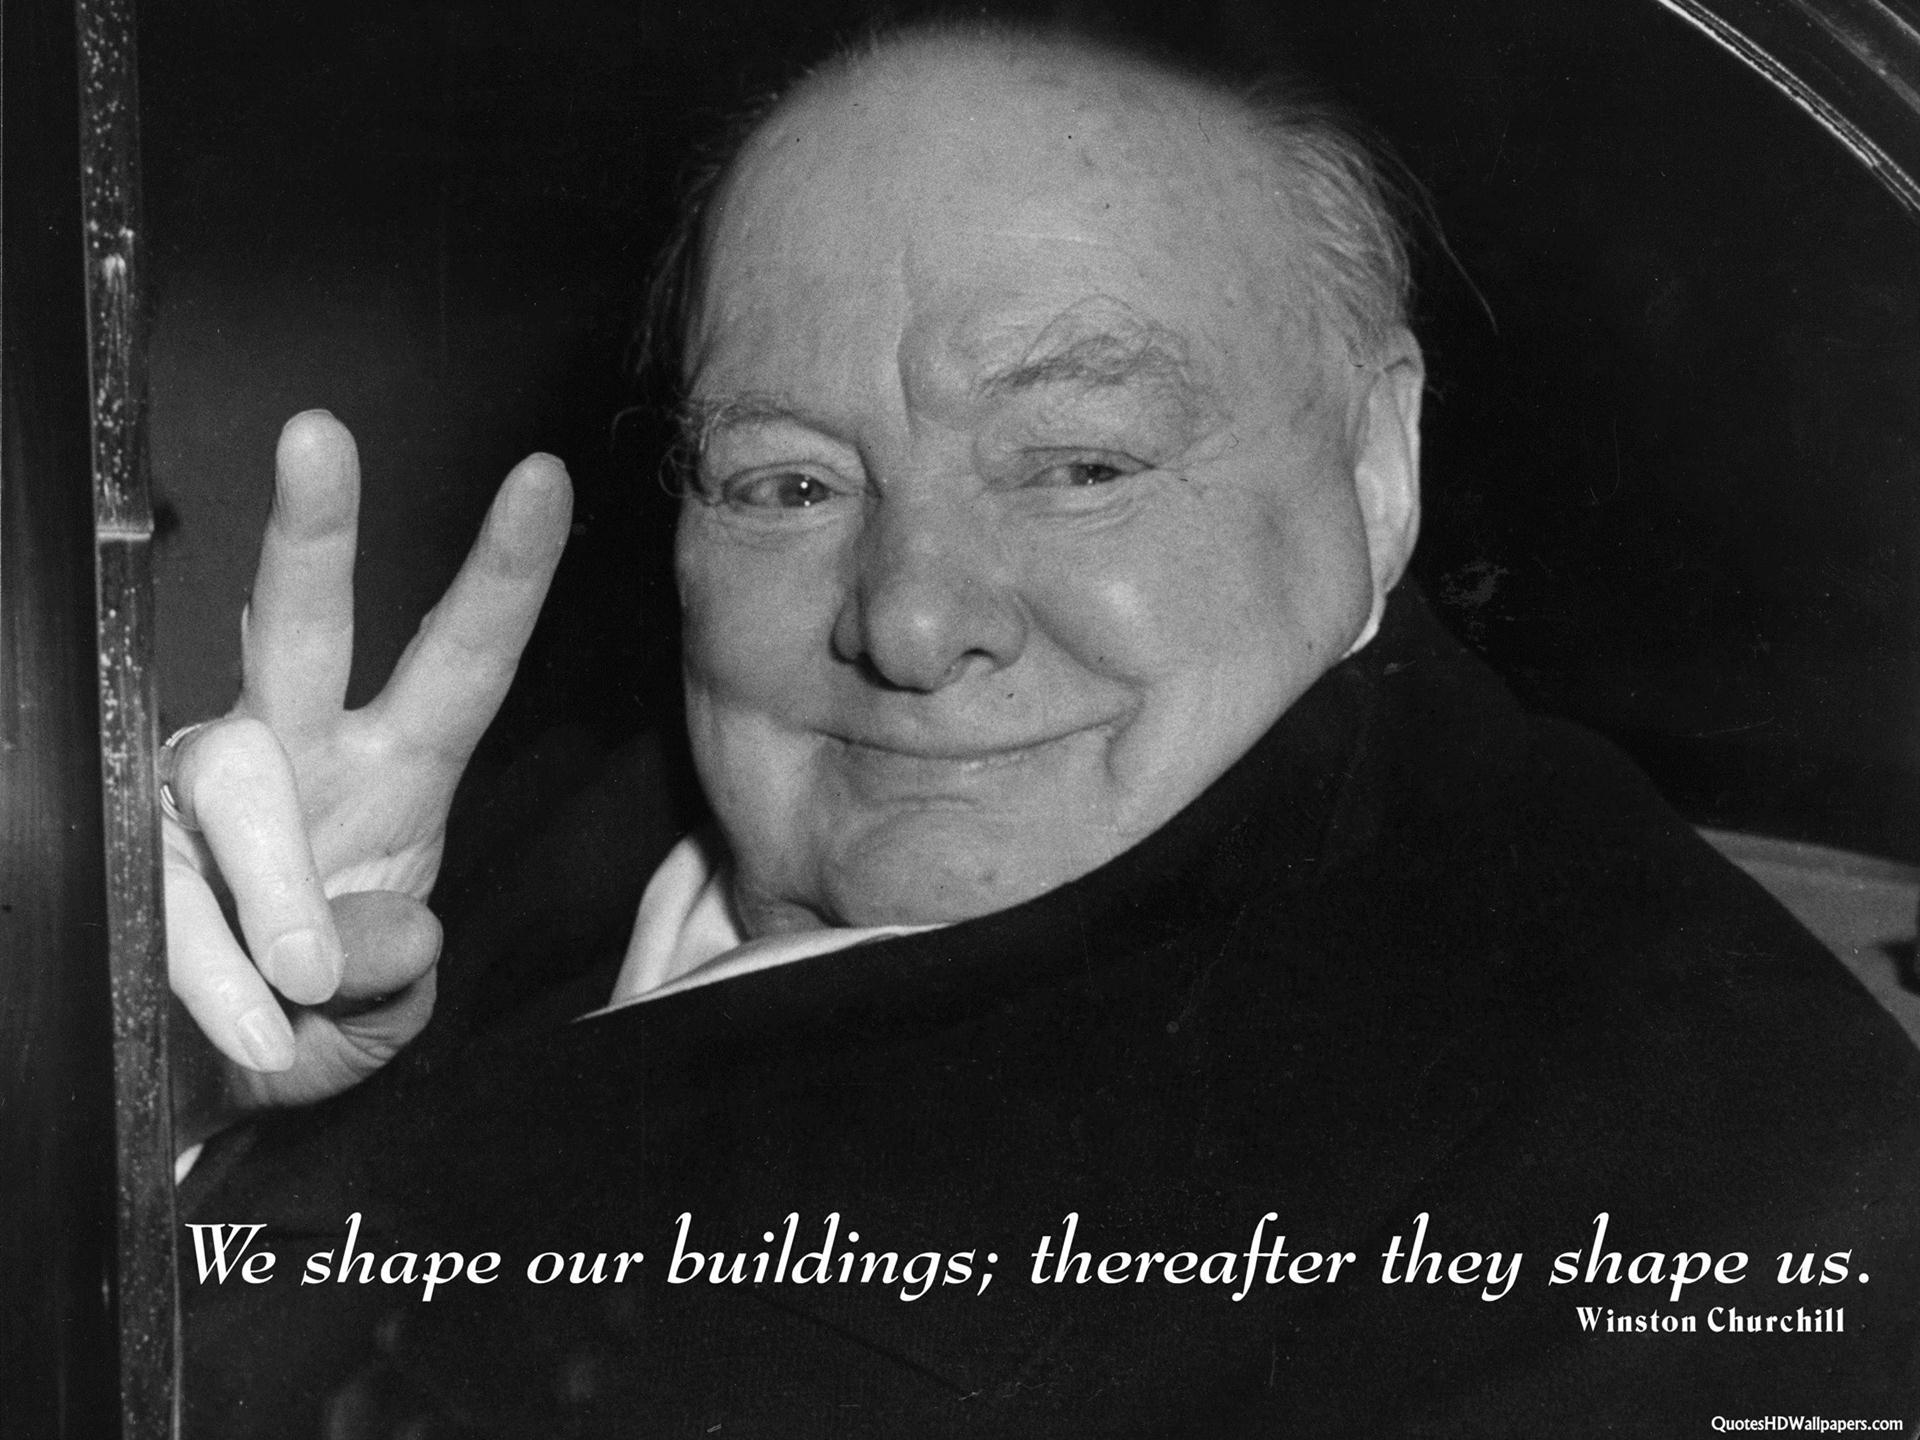 Winston Churchill Architecture Buildings Quotes Images, - Winston Churchill  We Shape Buildings - 1920x1440 Wallpaper 